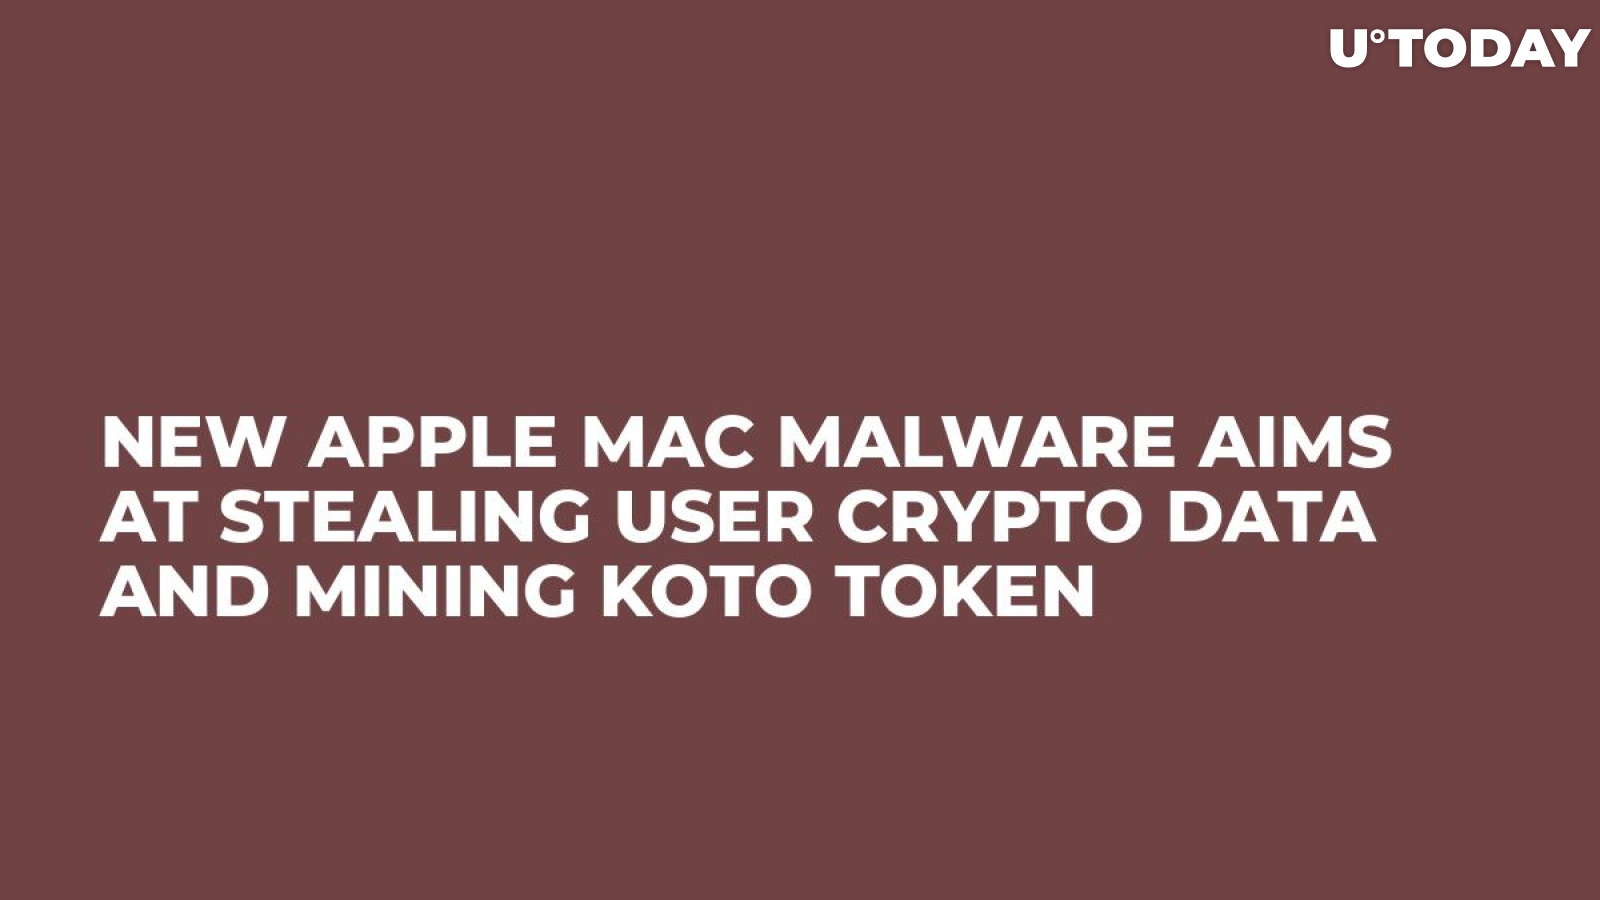 New Apple Mac Malware Aims at Stealing User Crypto Data and Mining Koto Token